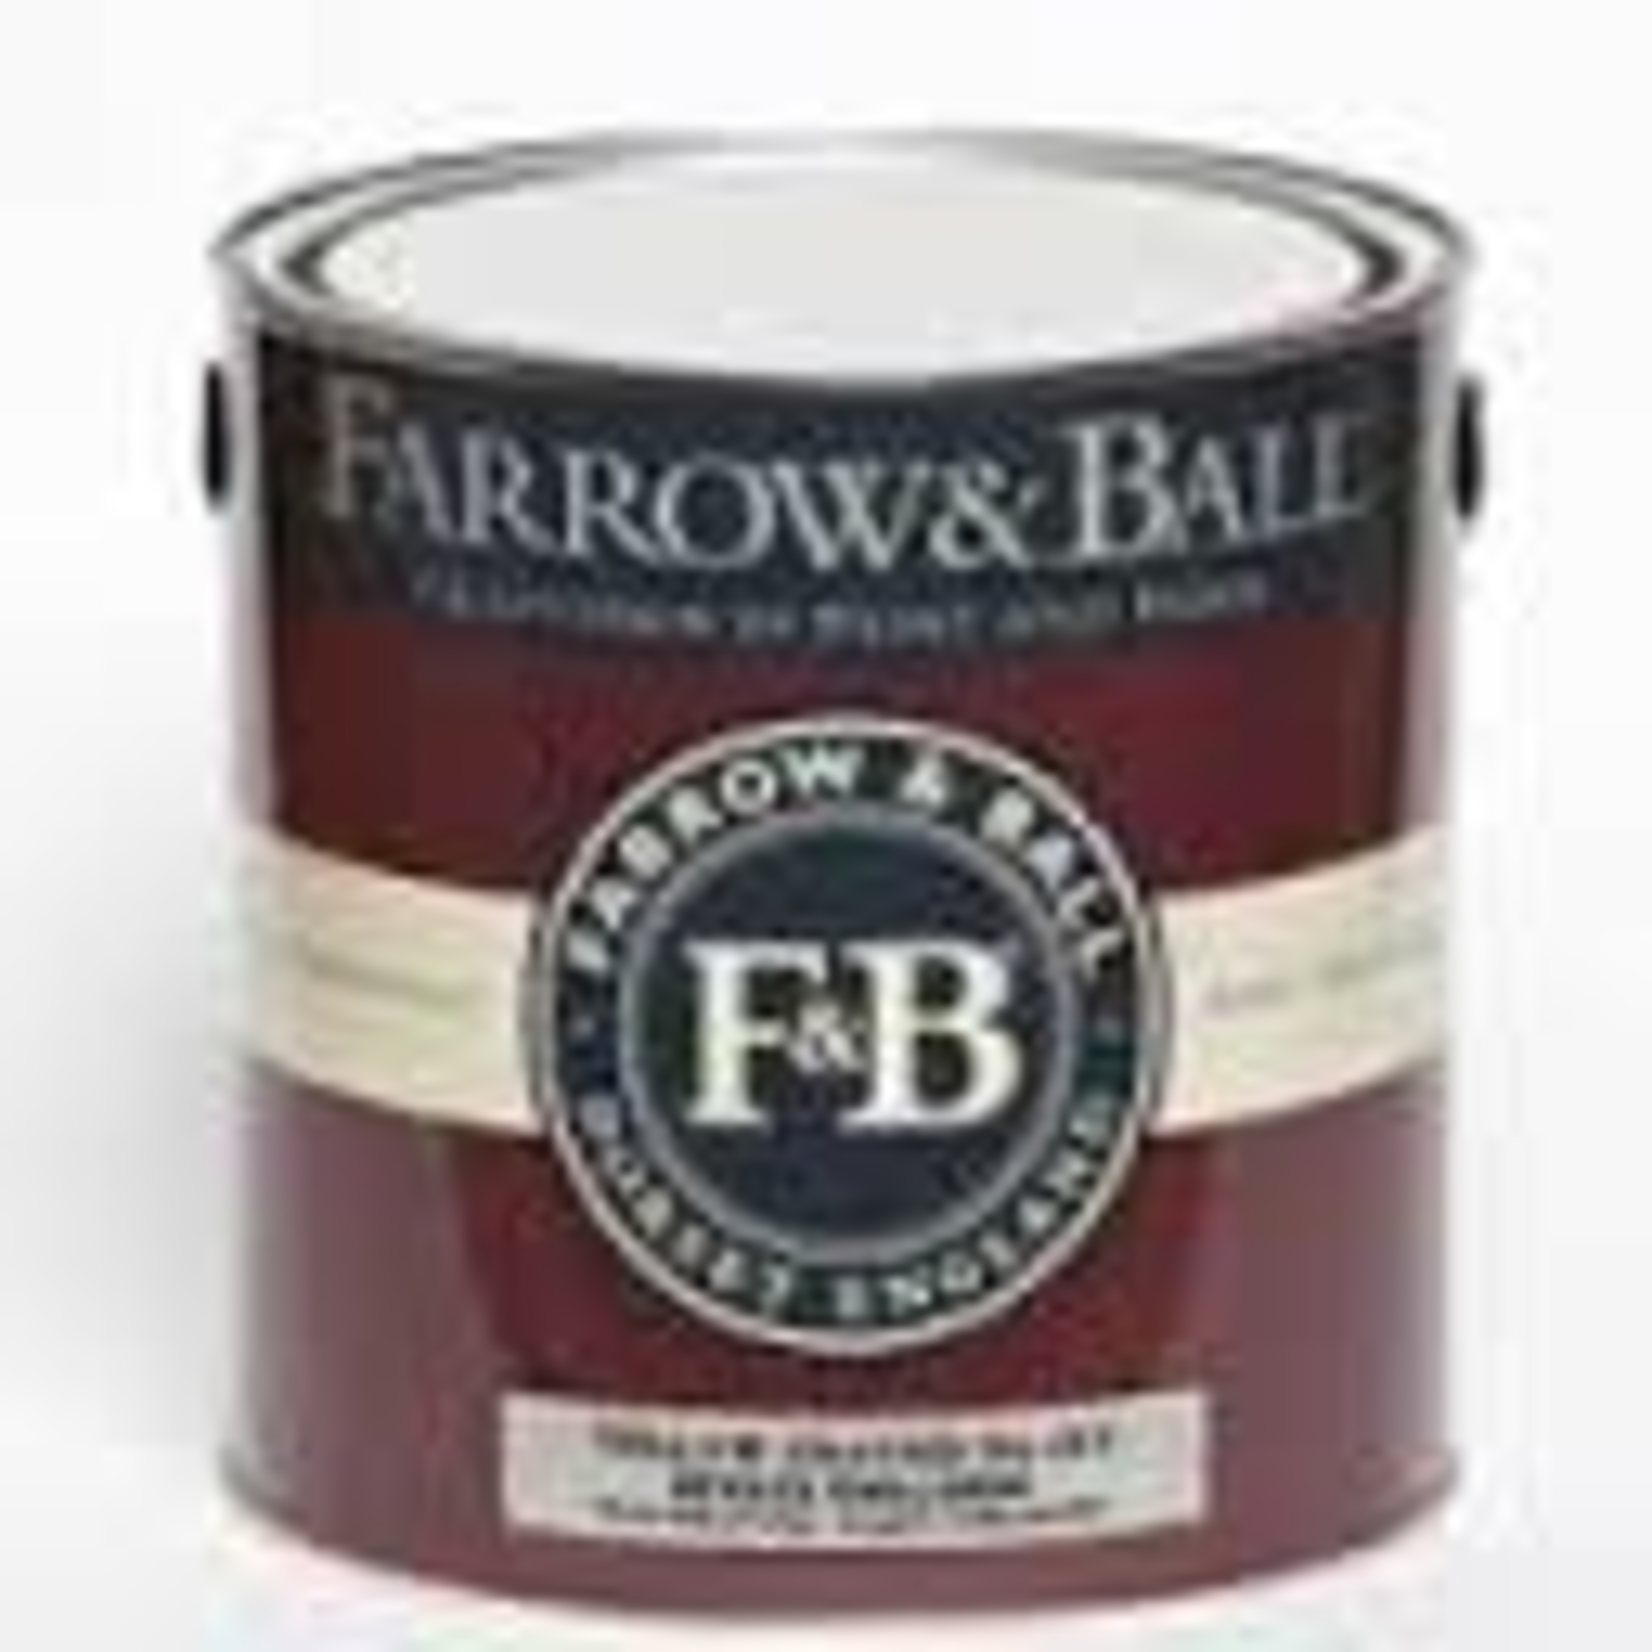 Farrow and Ball Gallon Estate Emulsion Menagerie No. 63